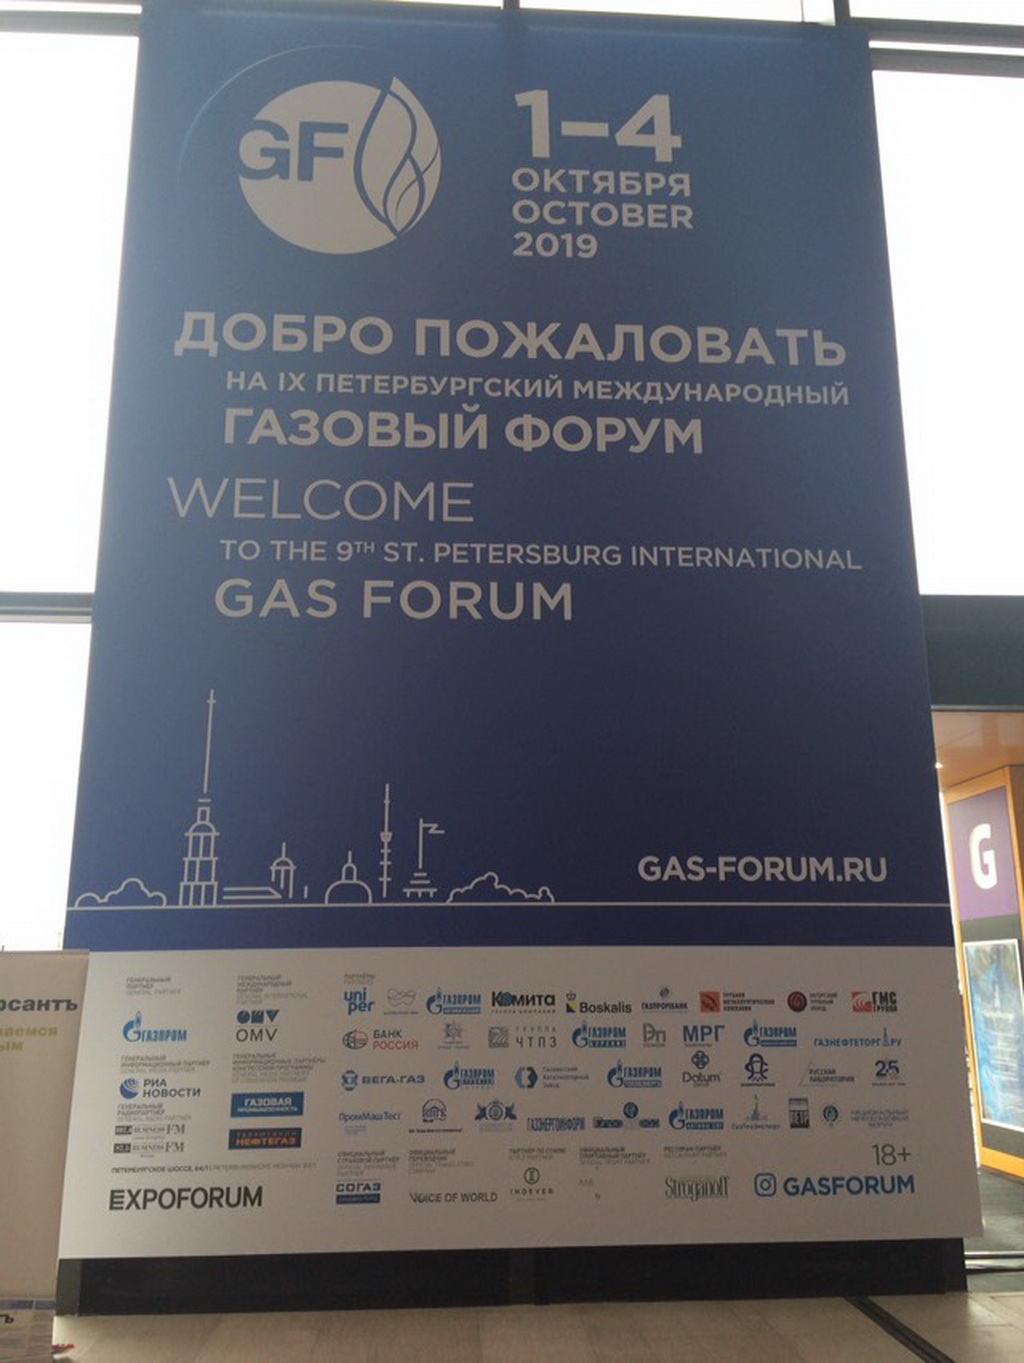 Gas Forum in St. Petersburg